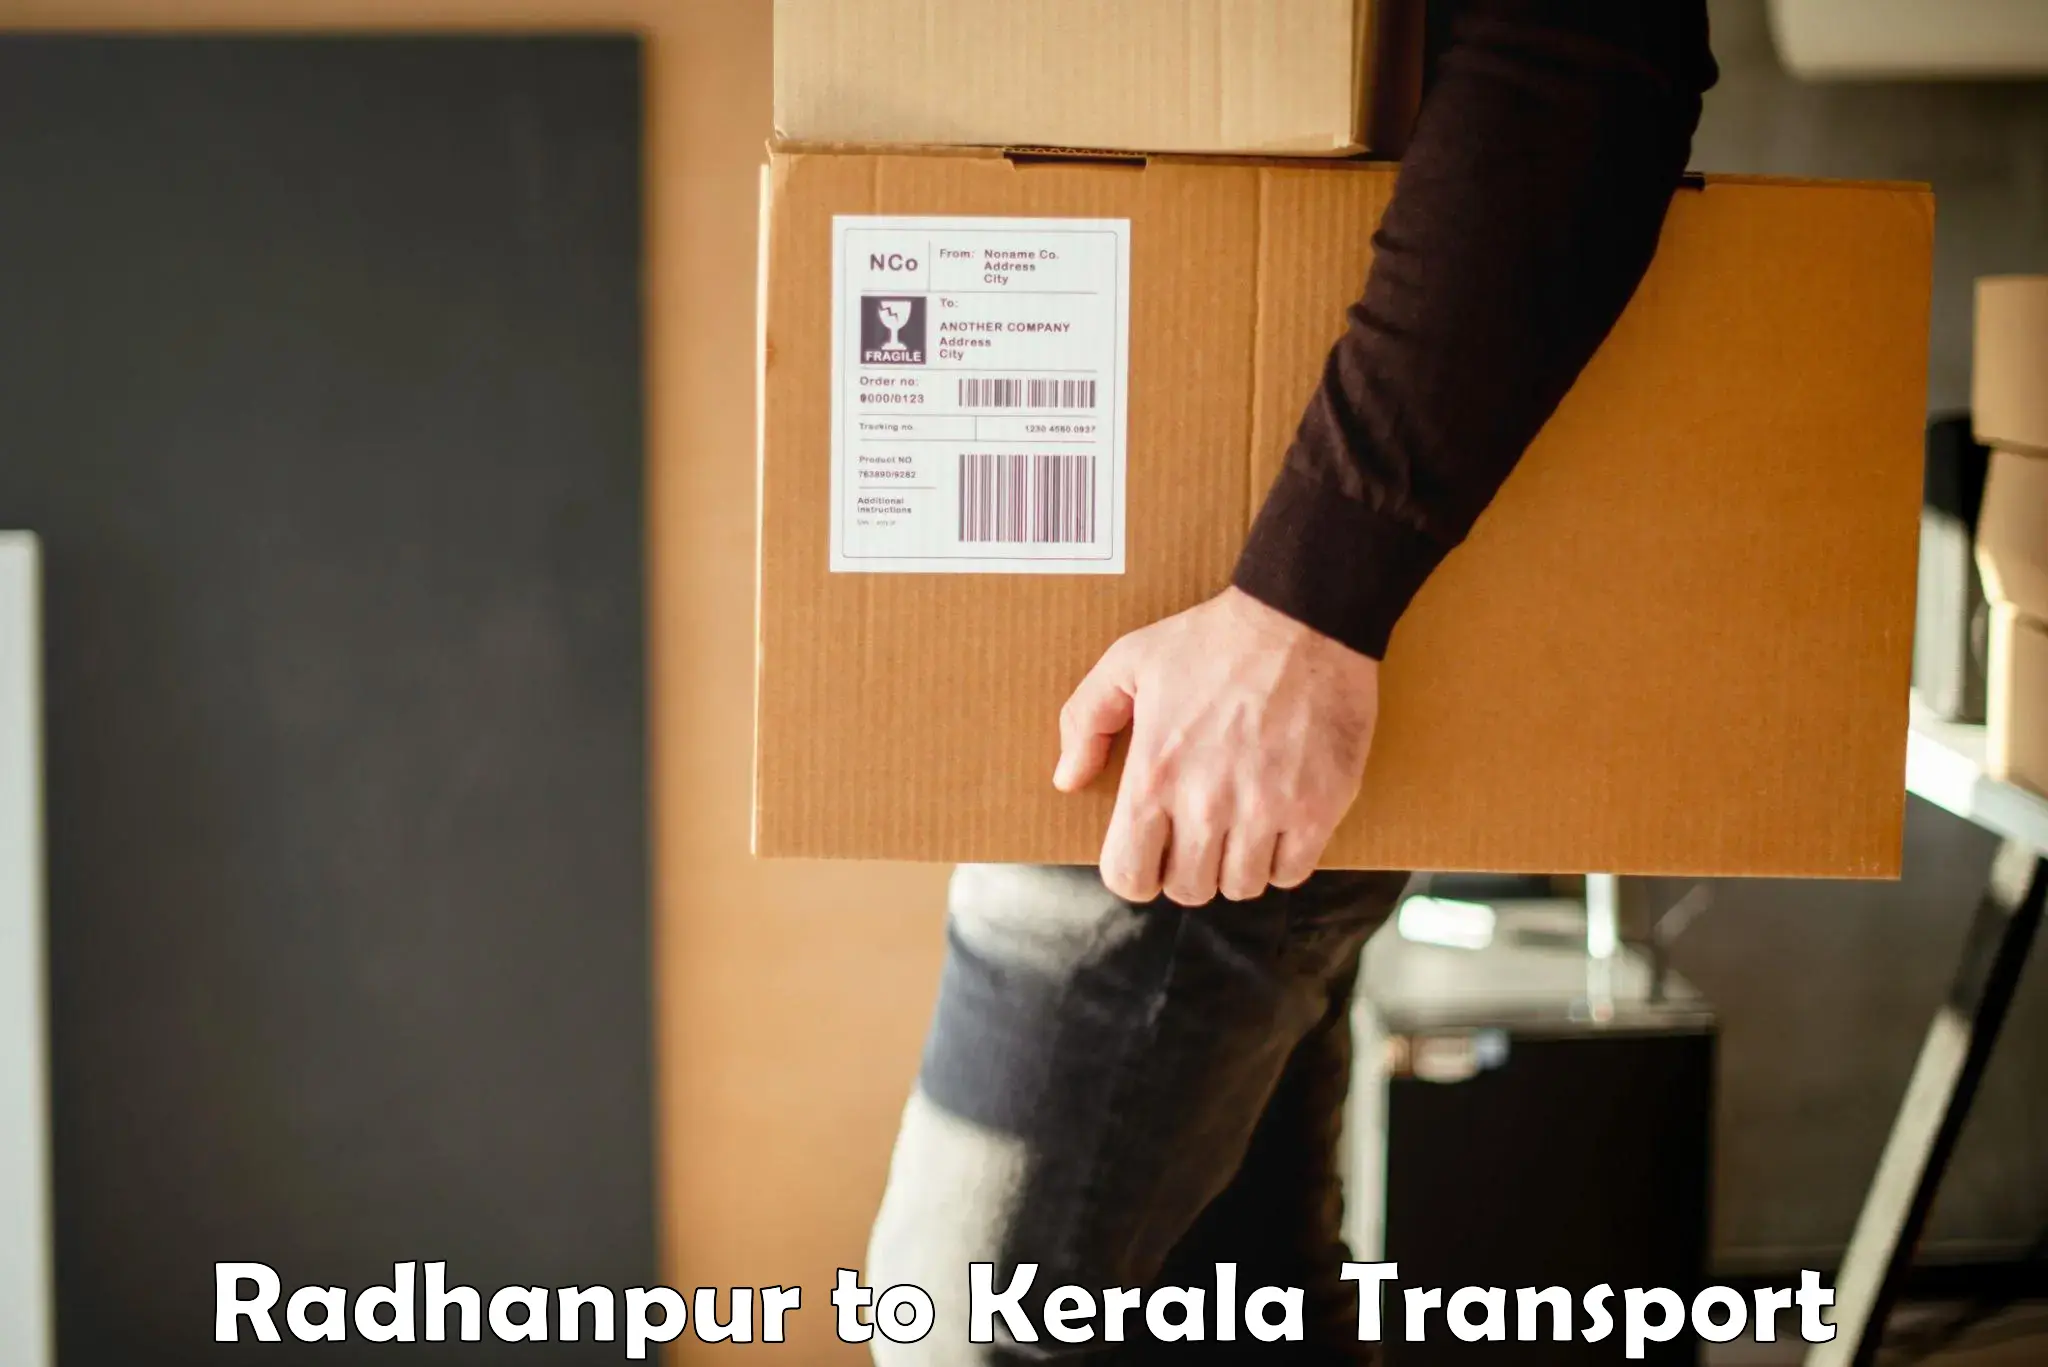 Furniture transport service Radhanpur to Kerala